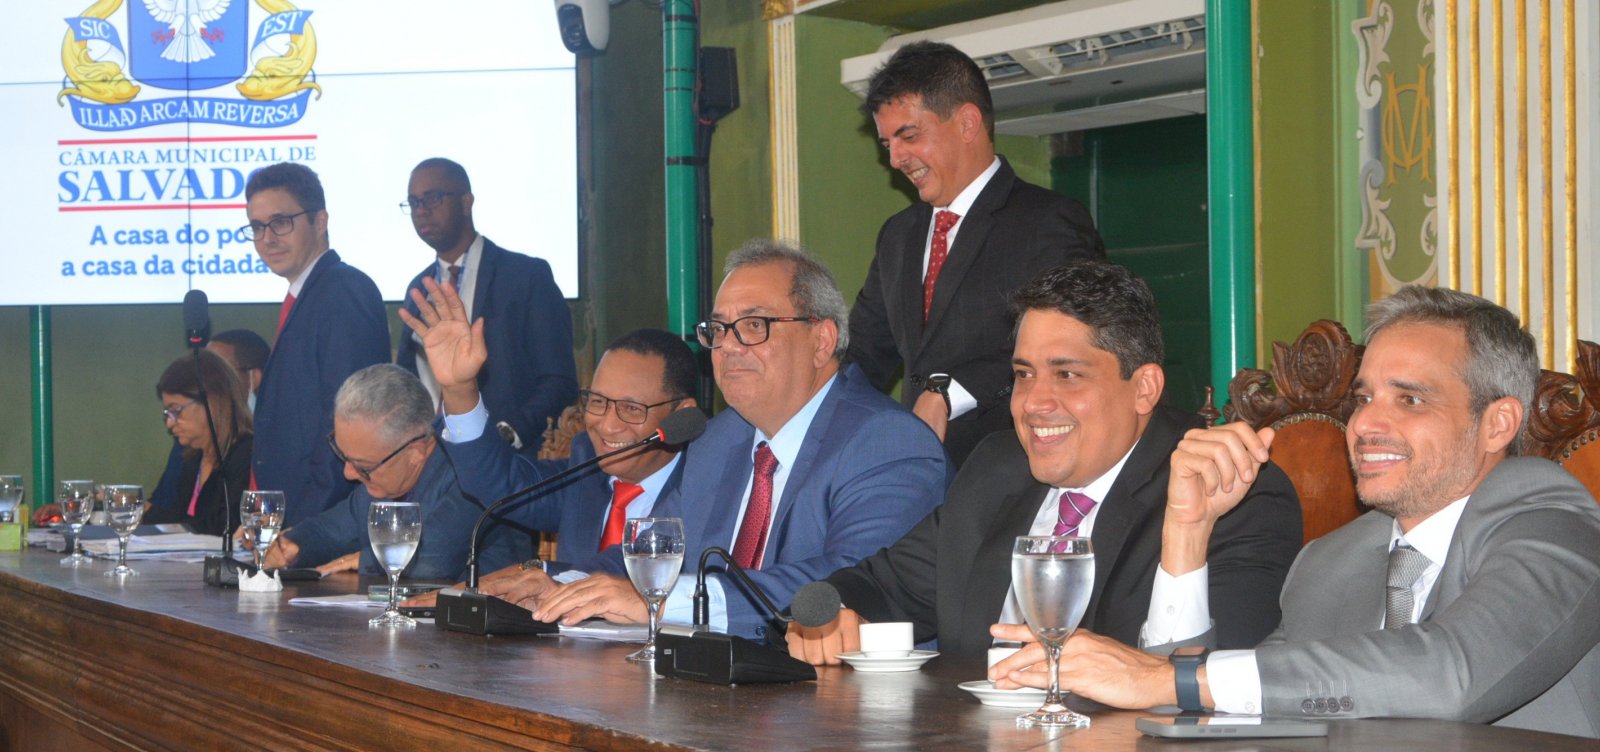 Câmara de Salvador aprova empréstimos de quase R$ 900 milhões para prefeitura